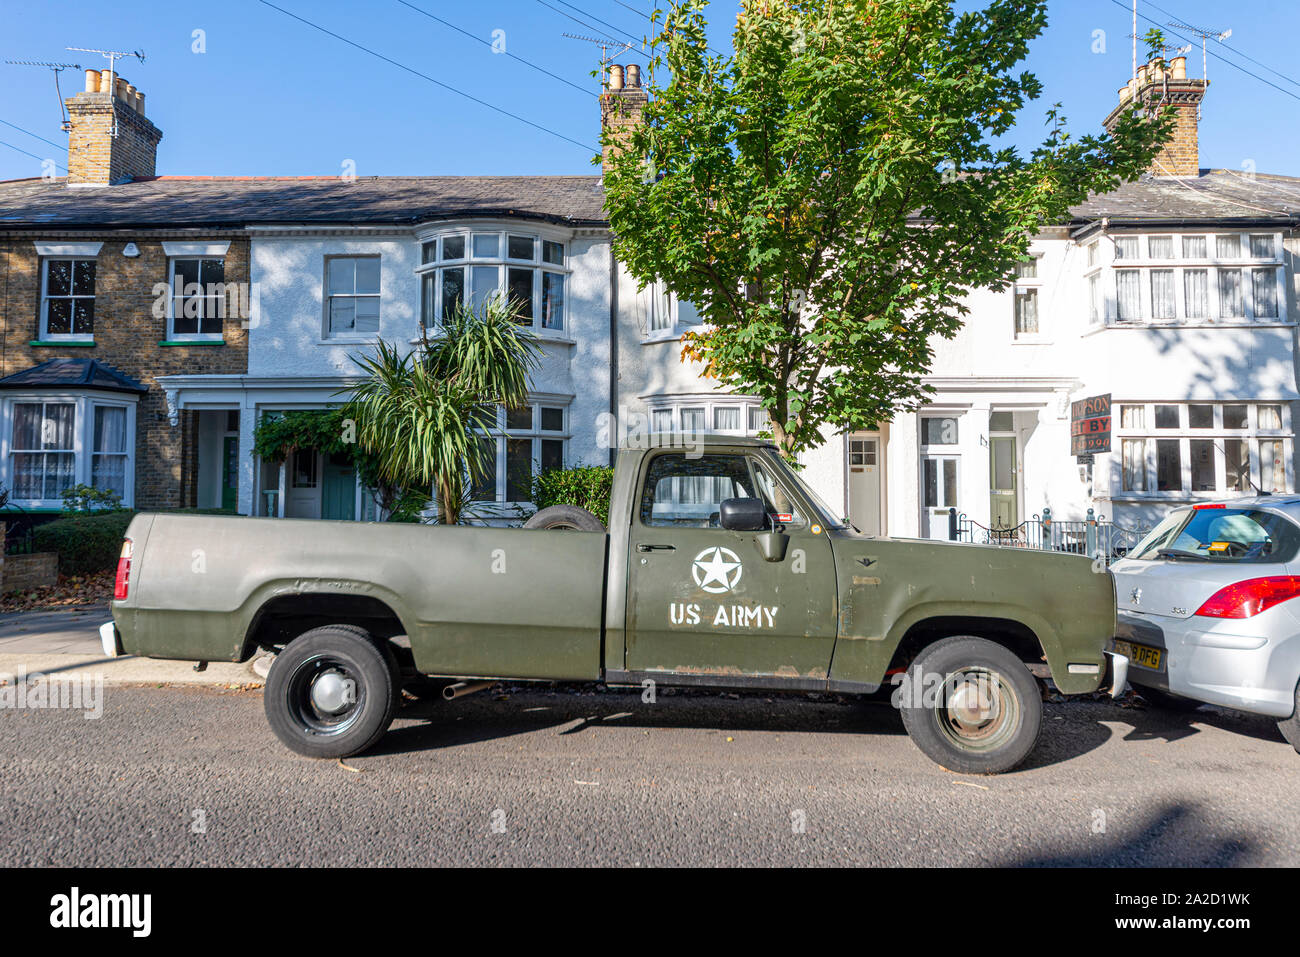 Camionnette privée peinte par l'armée américaine garée dans une rue résidentielle à Westcliff, Southend on Sea, Essex, Royaume-Uni. Passionné militaire Banque D'Images